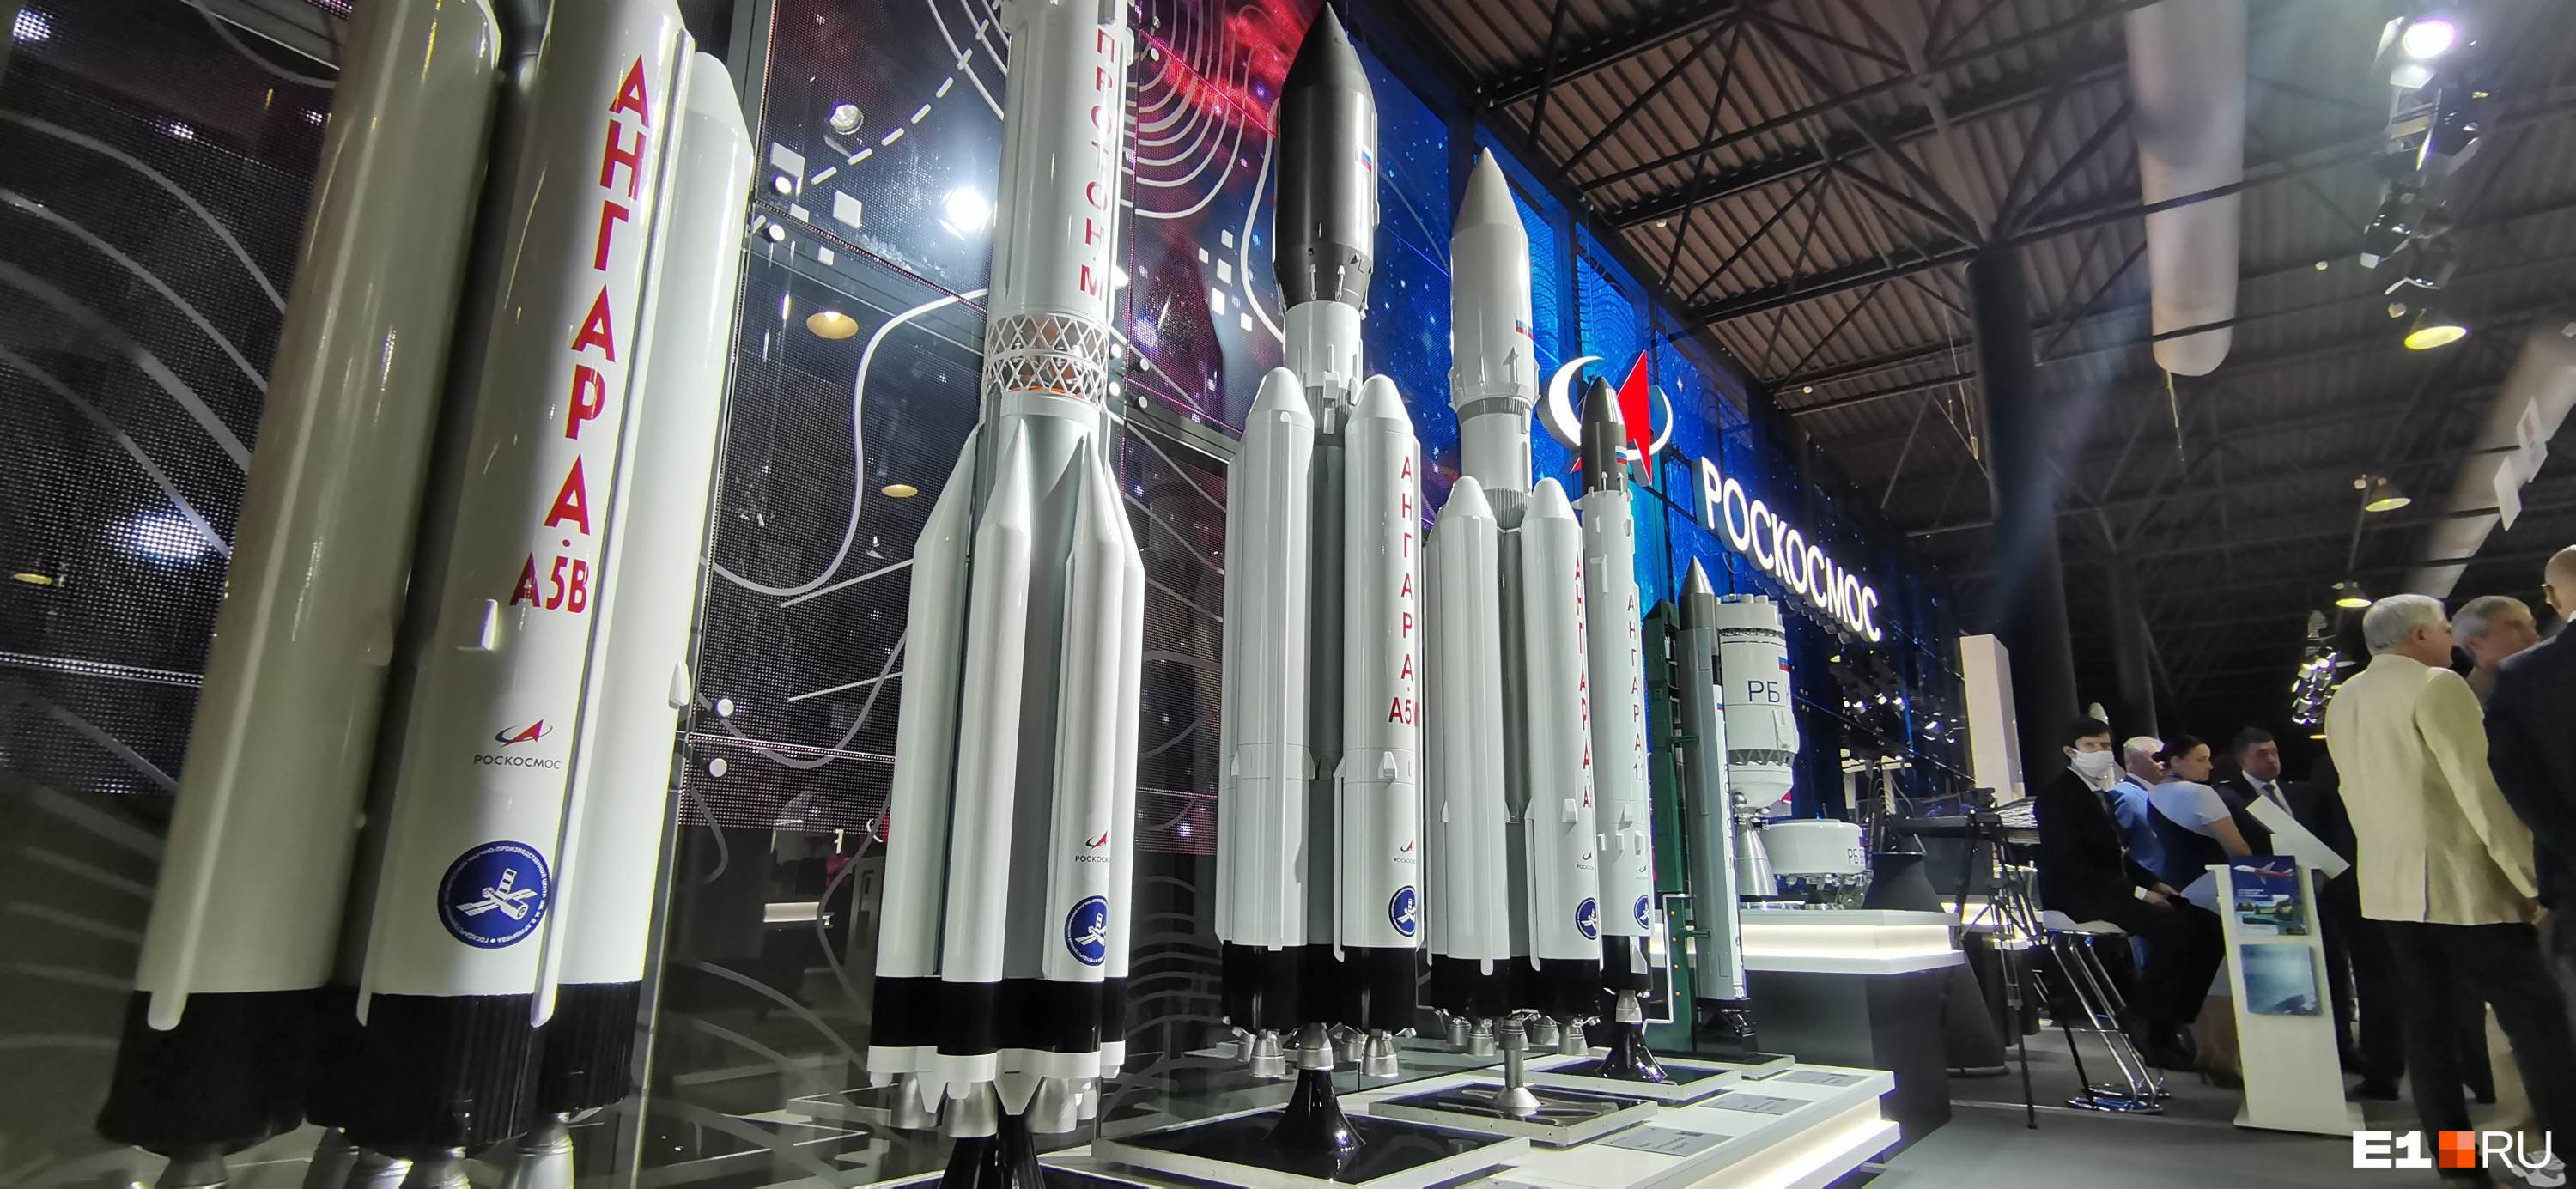 Макеты ракет-носителей, крайний слева — самый мощный. Он может поднимать до 37 тонн полезного груза на орбиту Земли